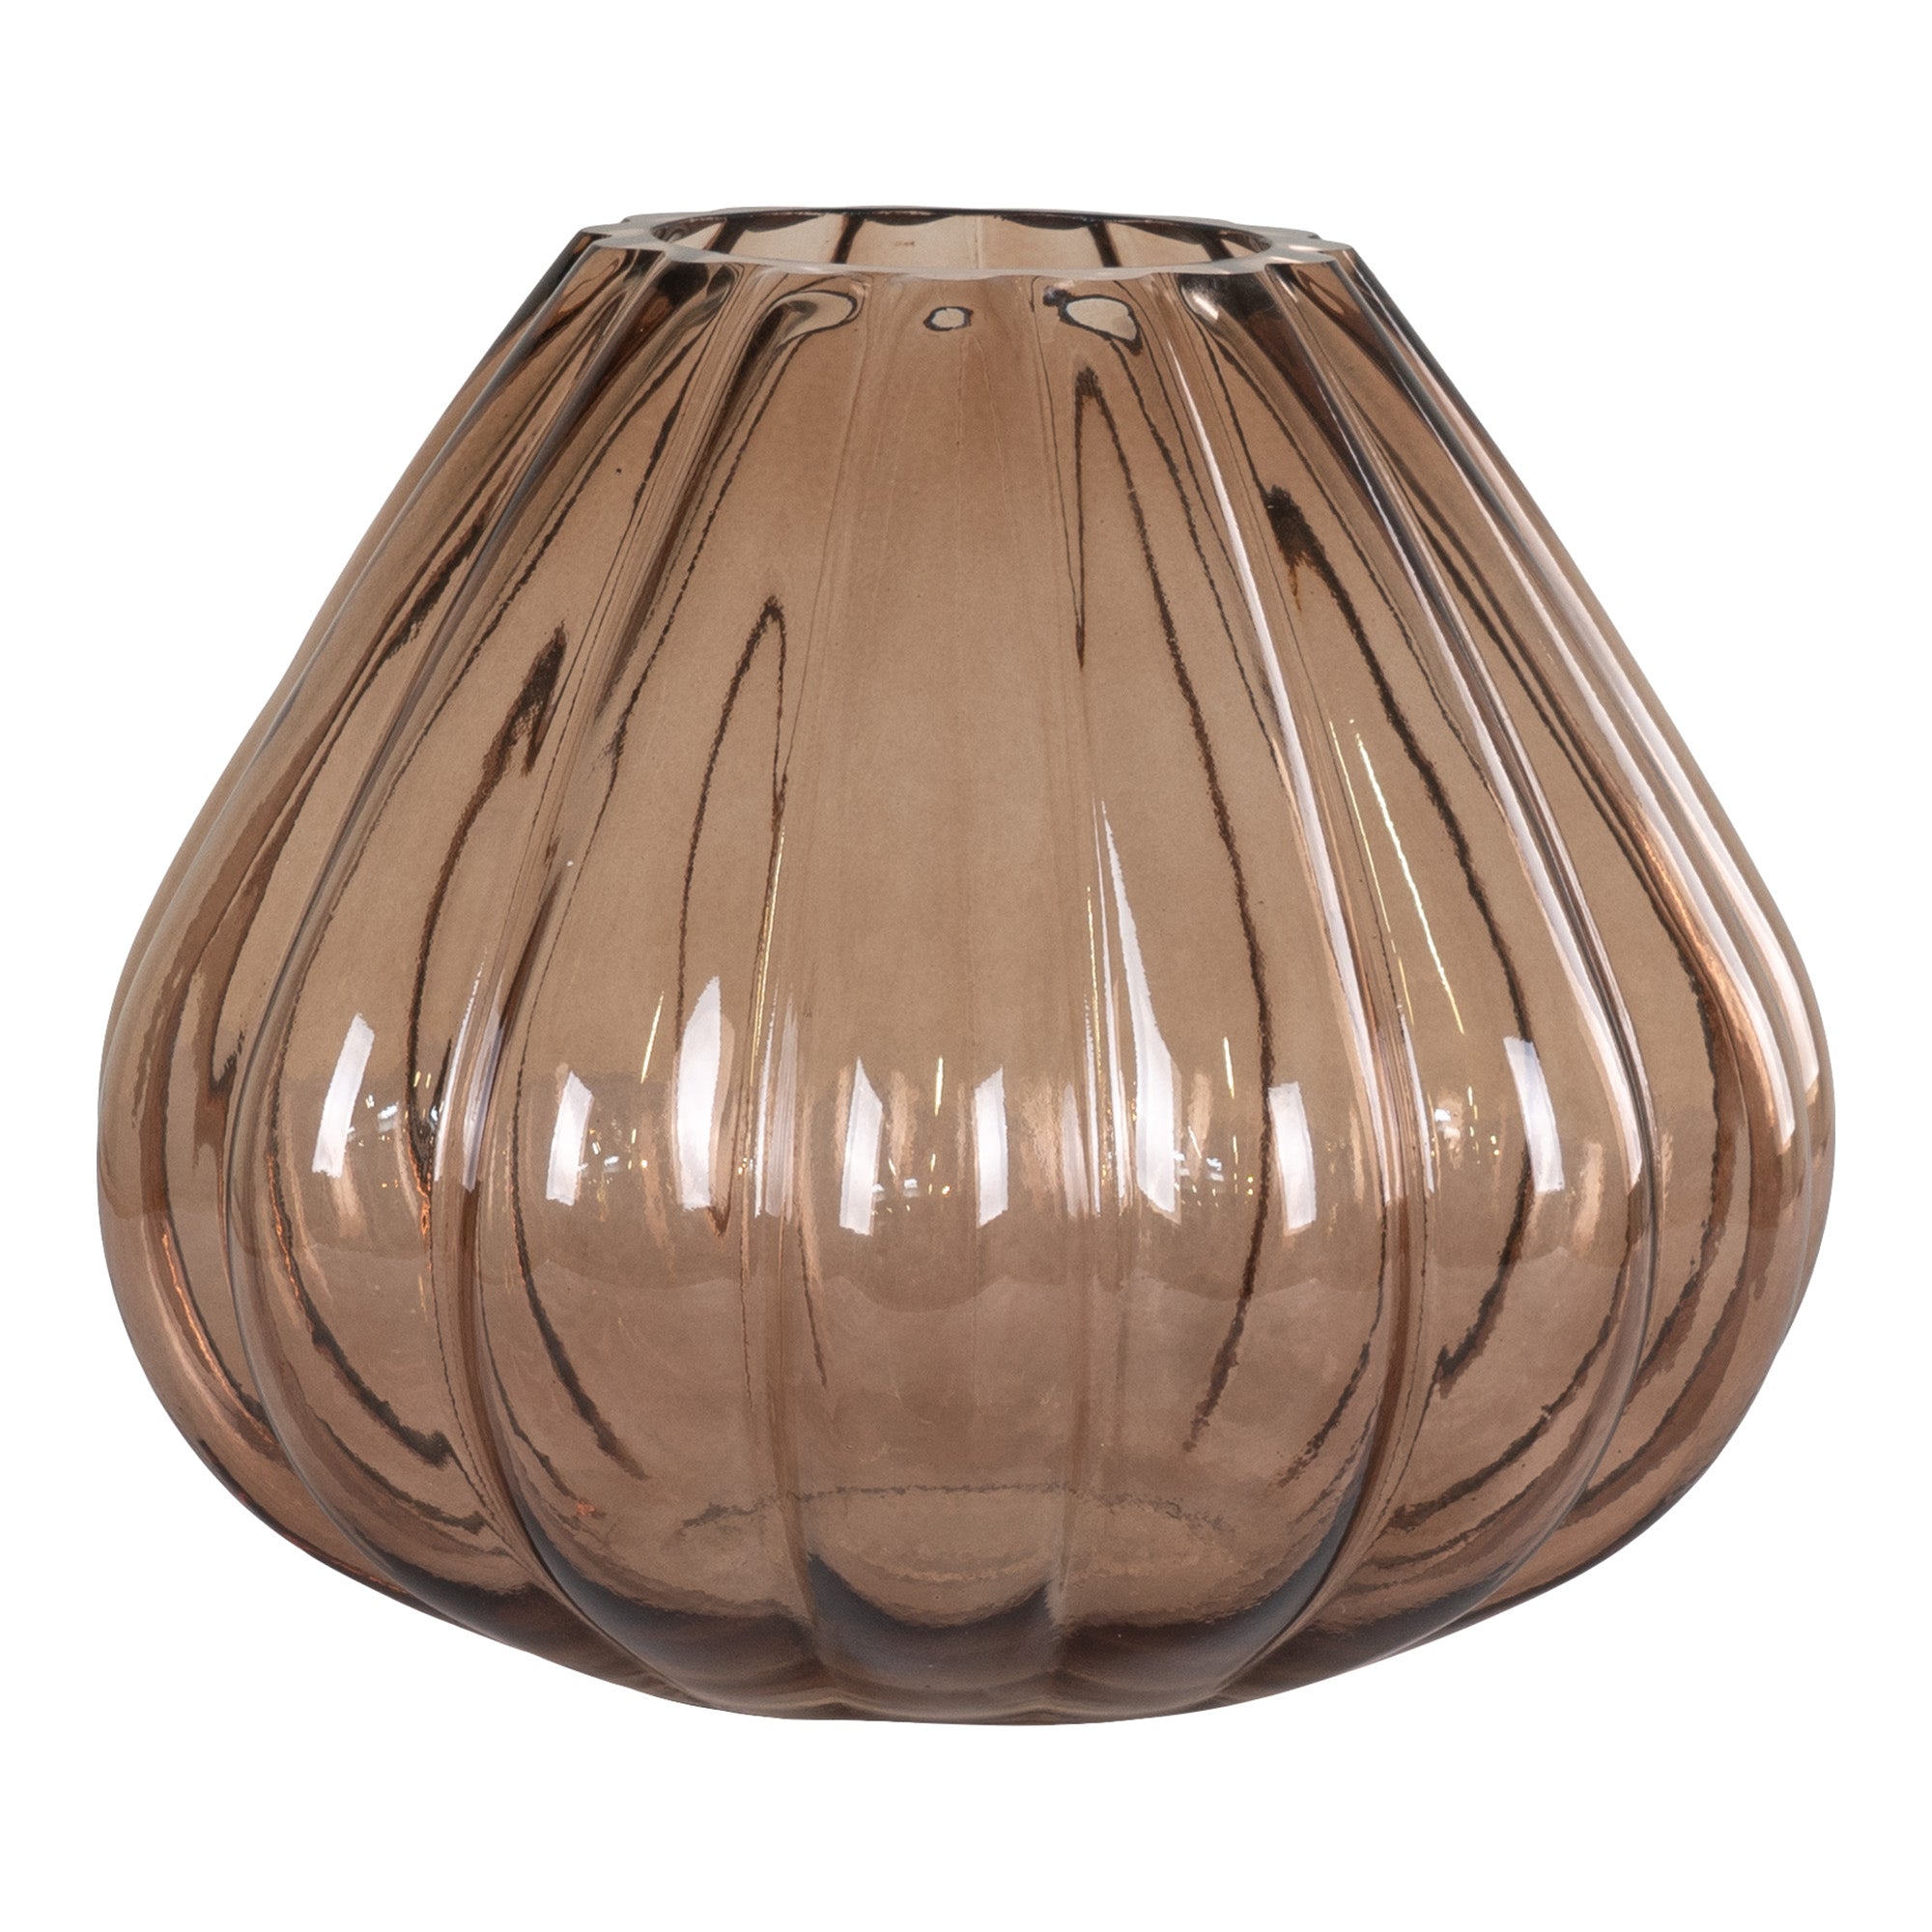 Billede af Vase - Vase i mundblæst glas, brun, Ø20x16 cm hos Lammeuld.dk